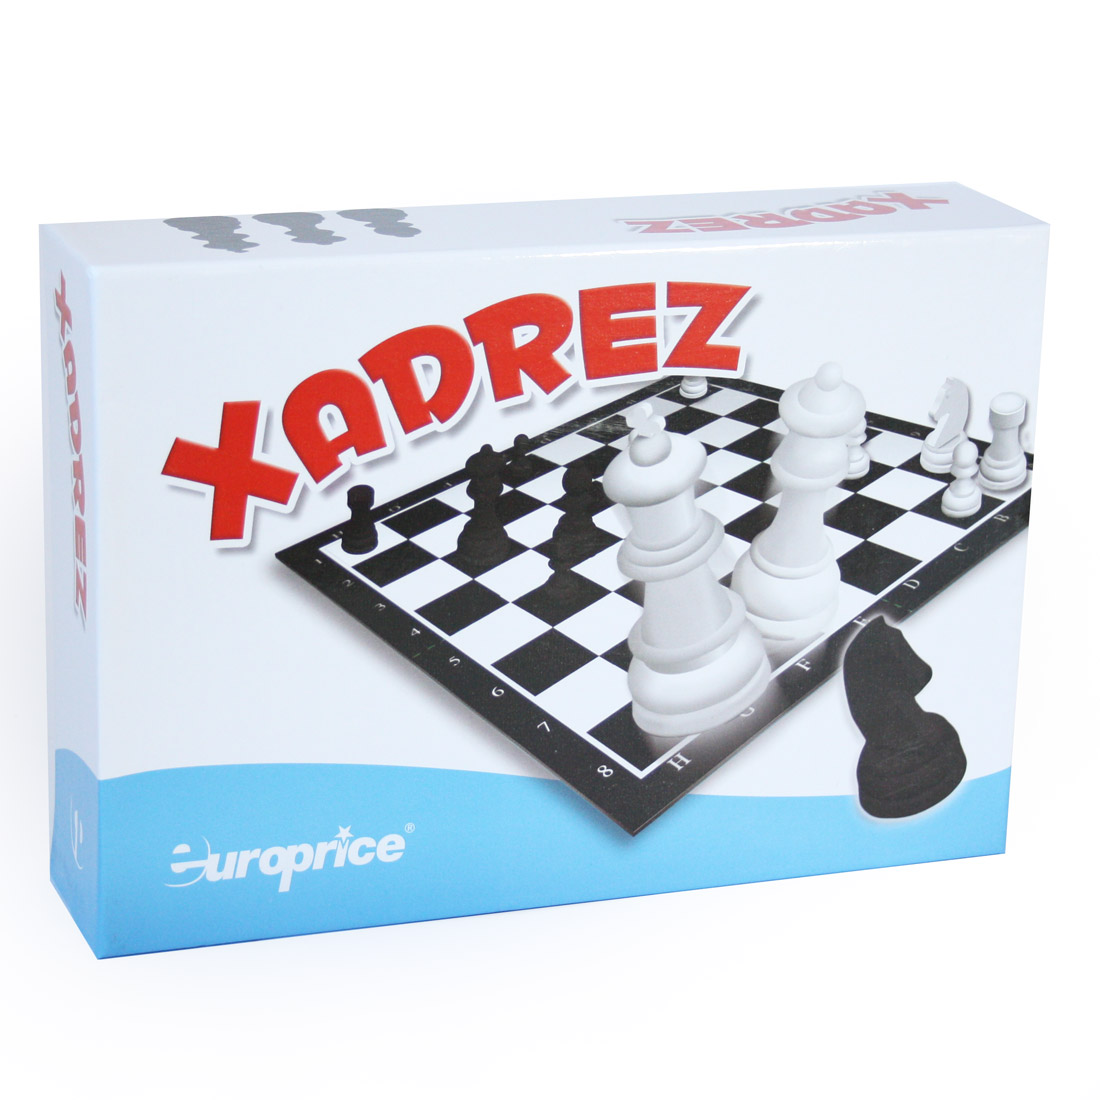 Tudo sobre Xadrez - Europrice